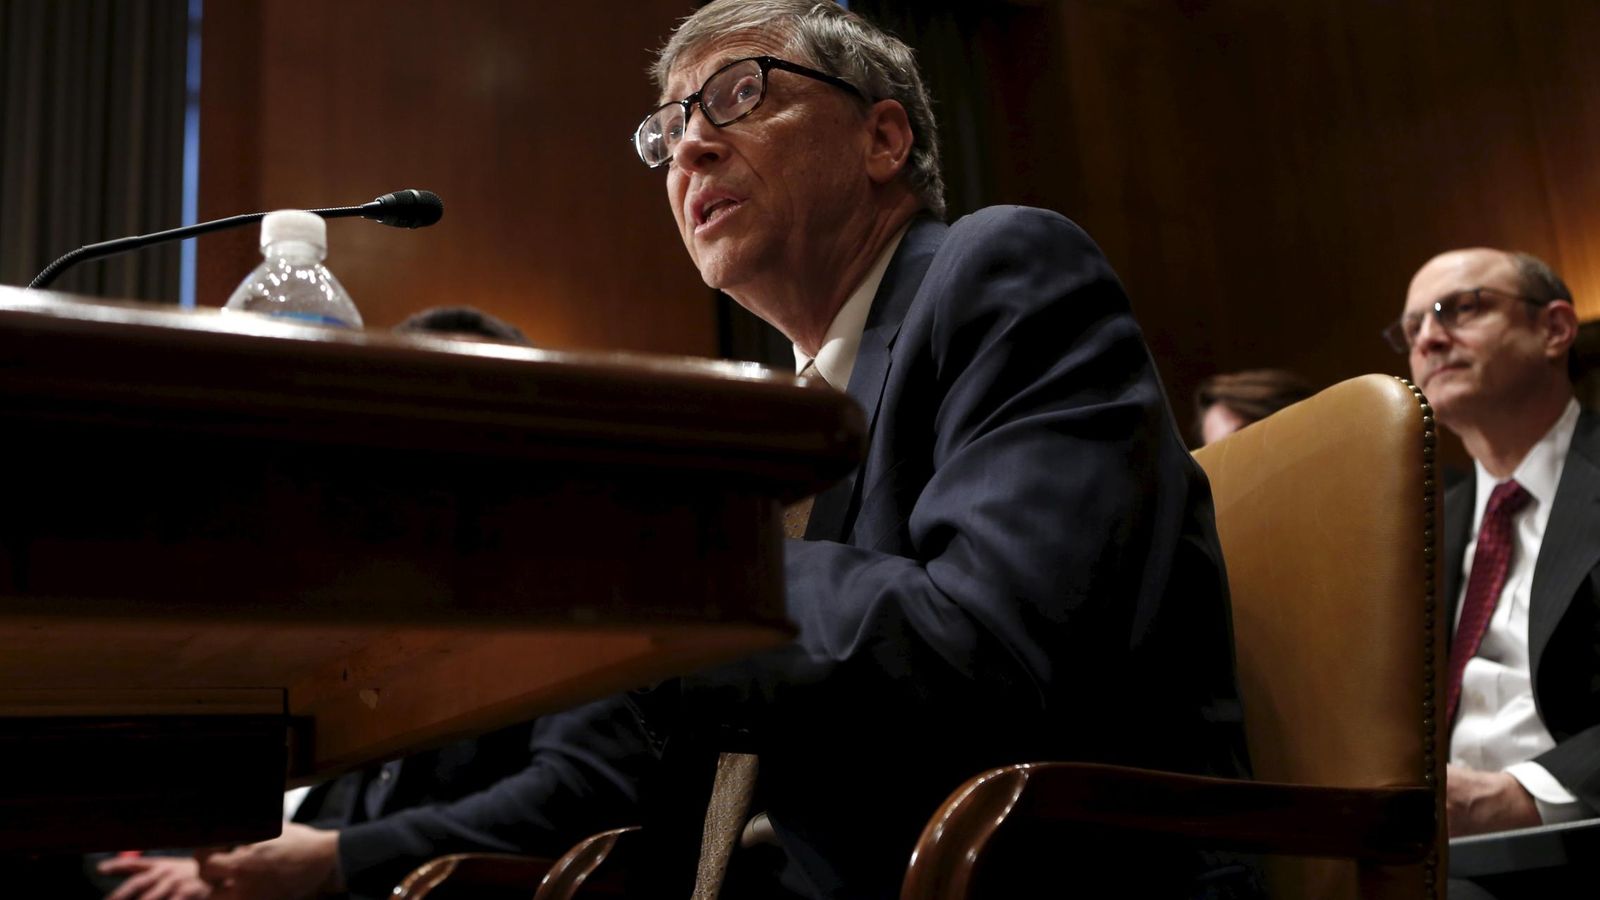 Foto: El fundador de Microsoft, Bill Gates. (Reuters)